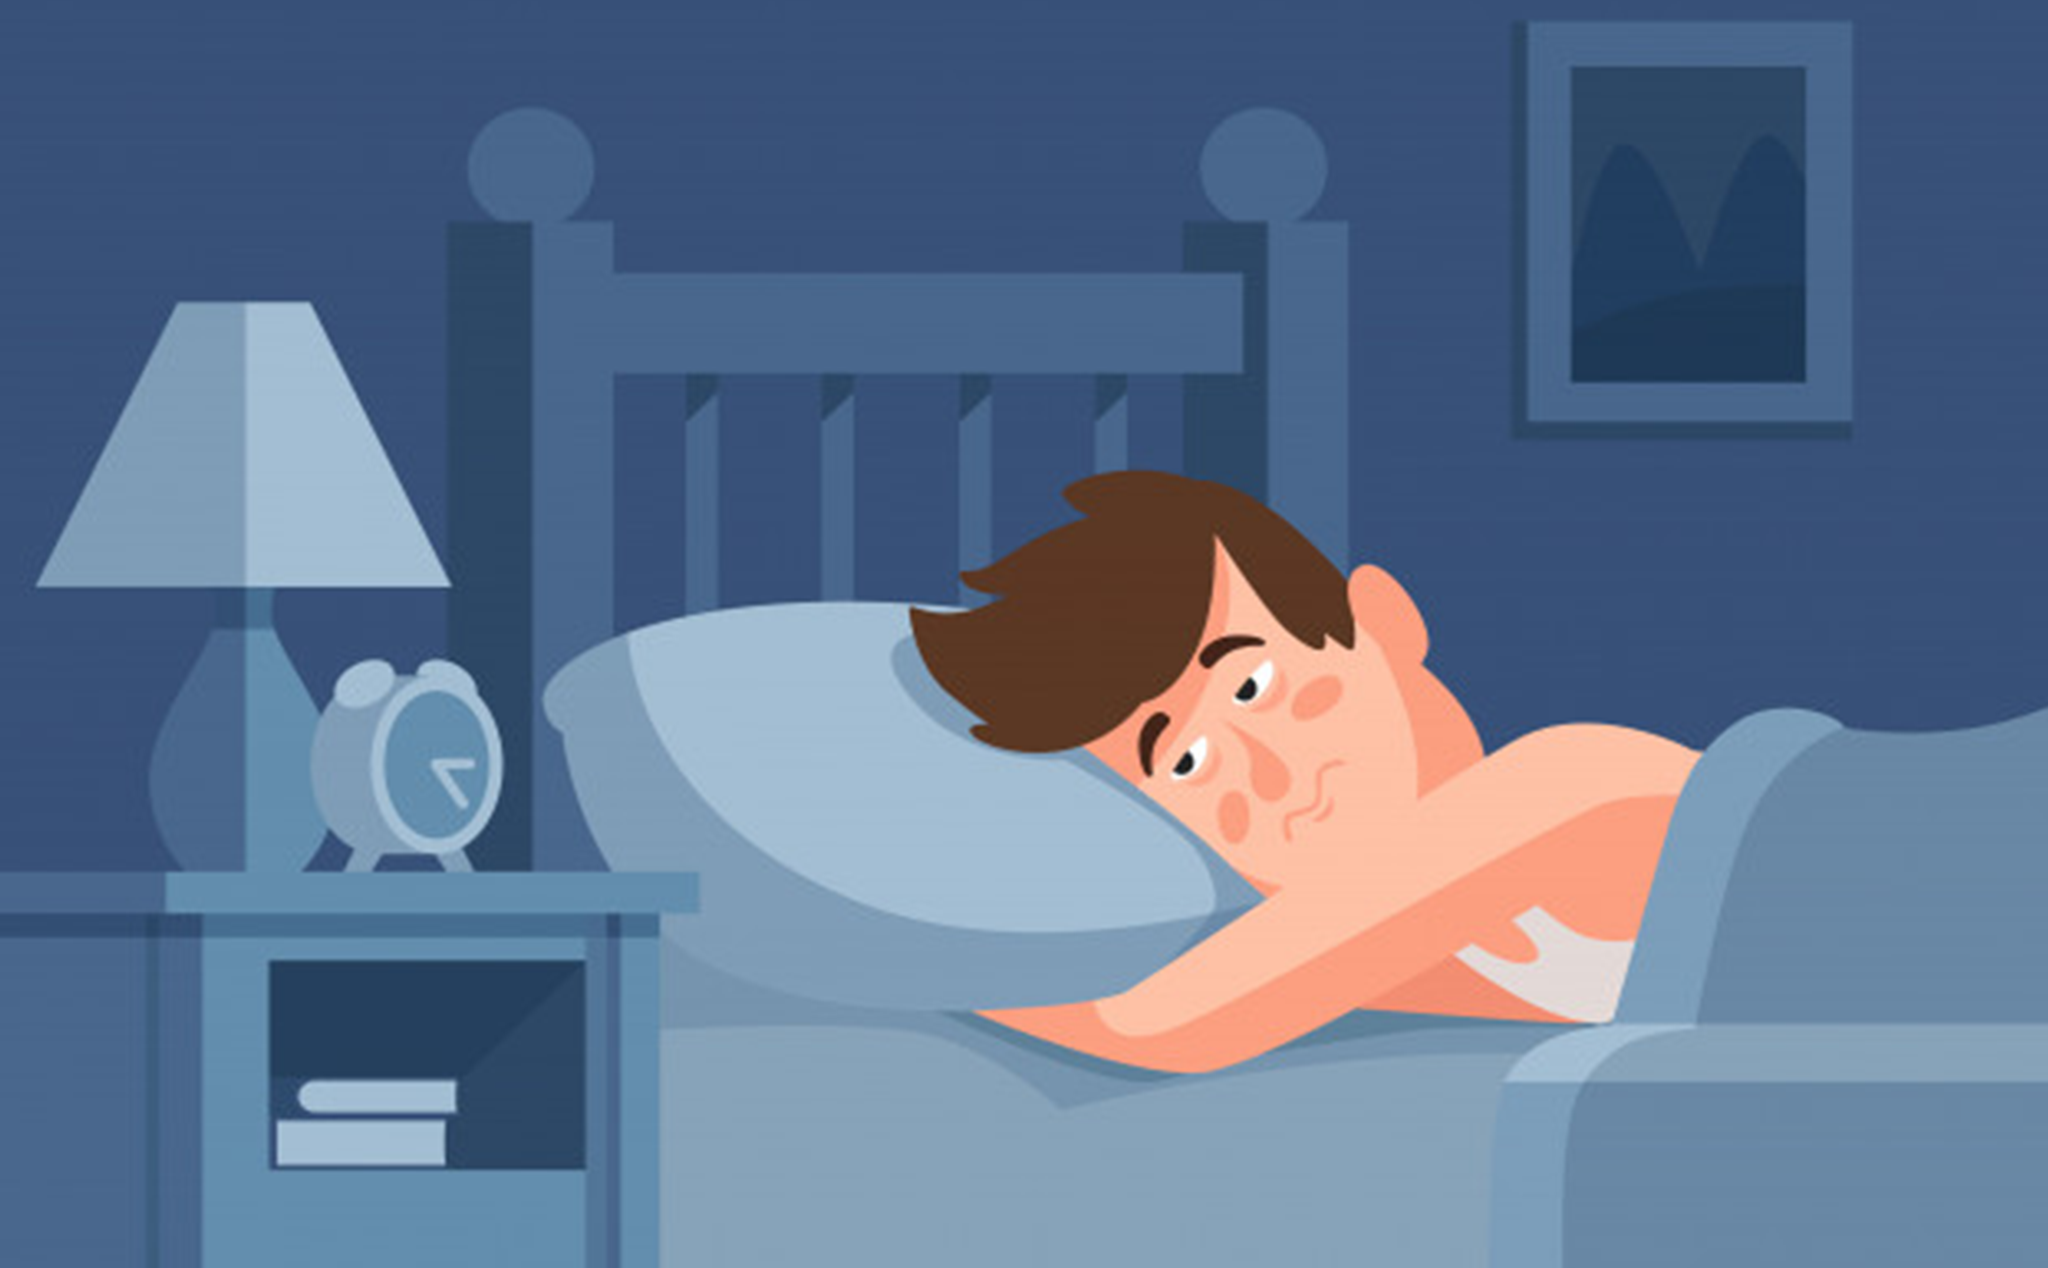   Thiếu ngủ khiến não bị giảm chức năng dẫn đến tình trạng hay quên  